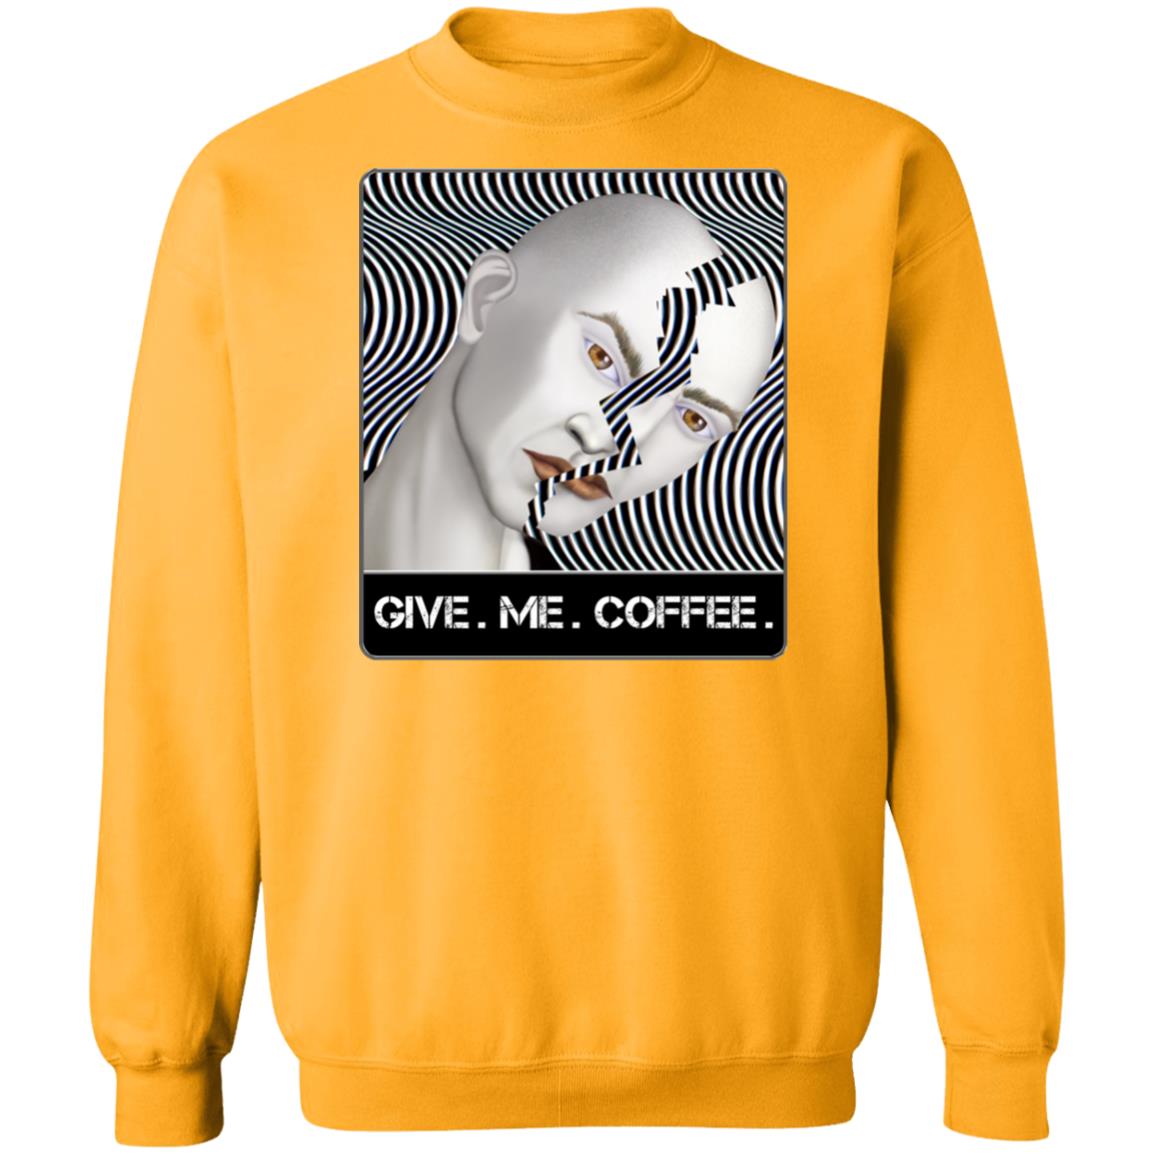 GIVE. ME. COFFEE. - Unisex Crew Neck Sweatshirt